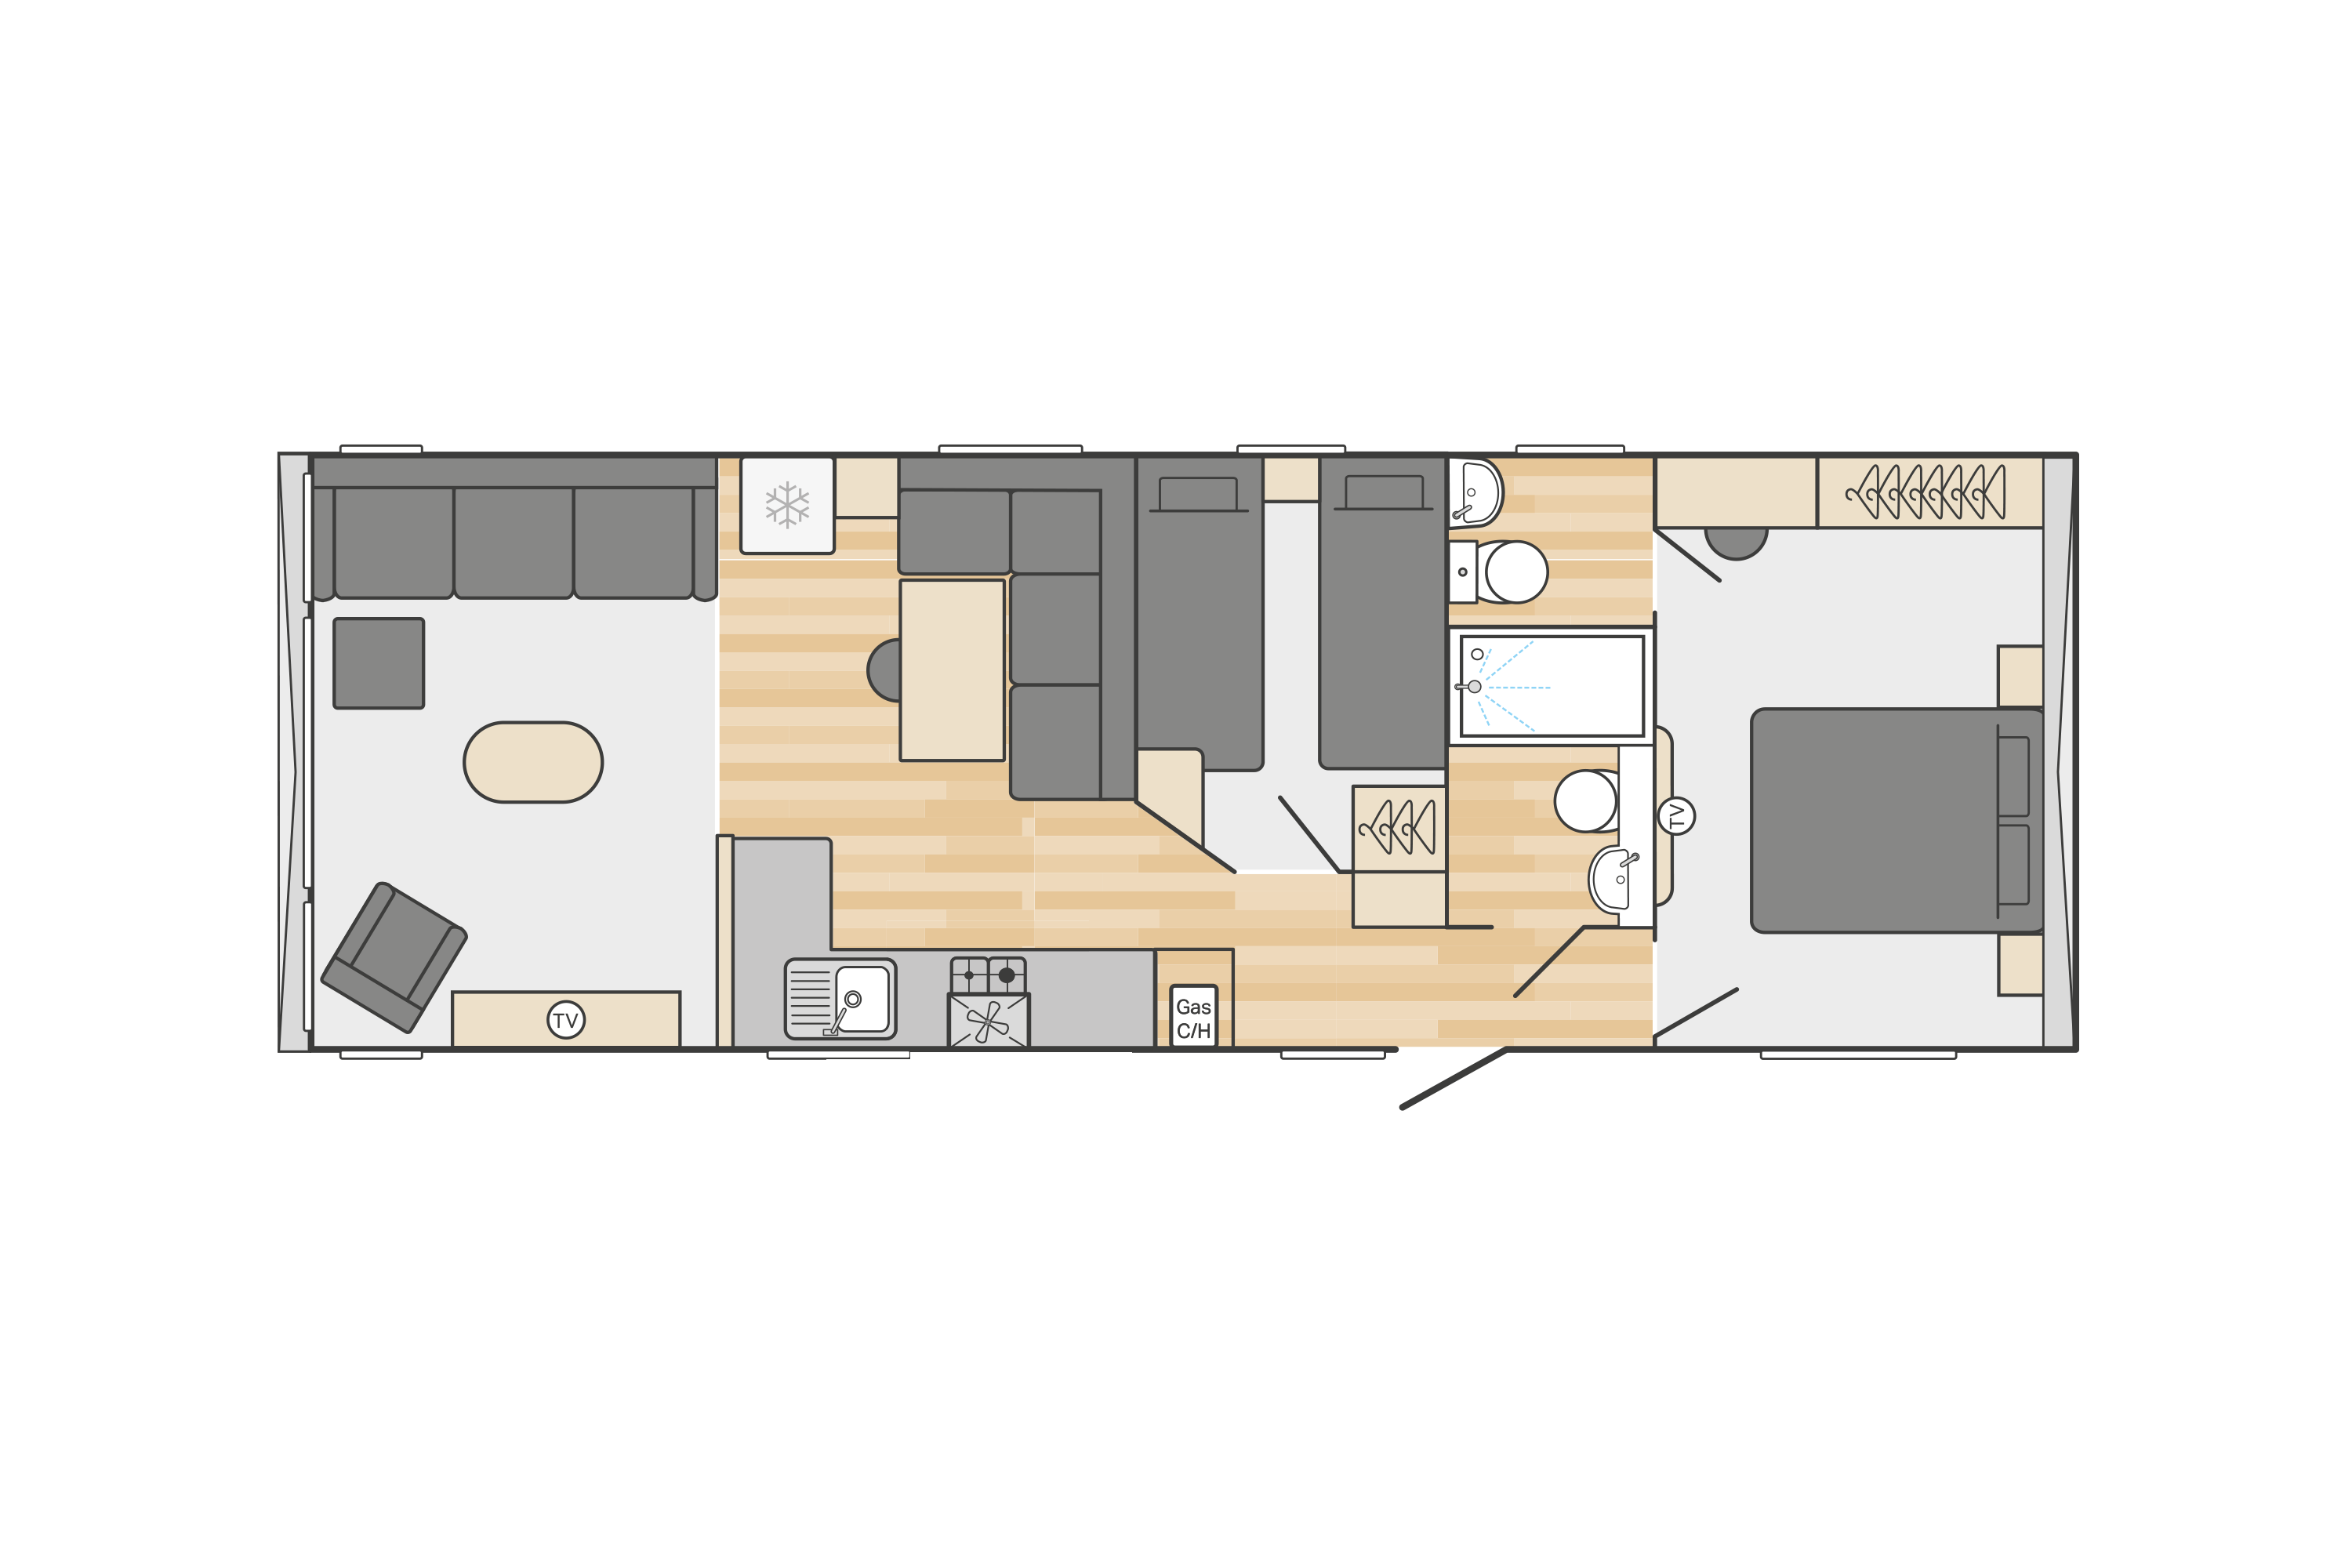 Moselle (scandi) 35' x 12' - 2 Bedroom floorplan